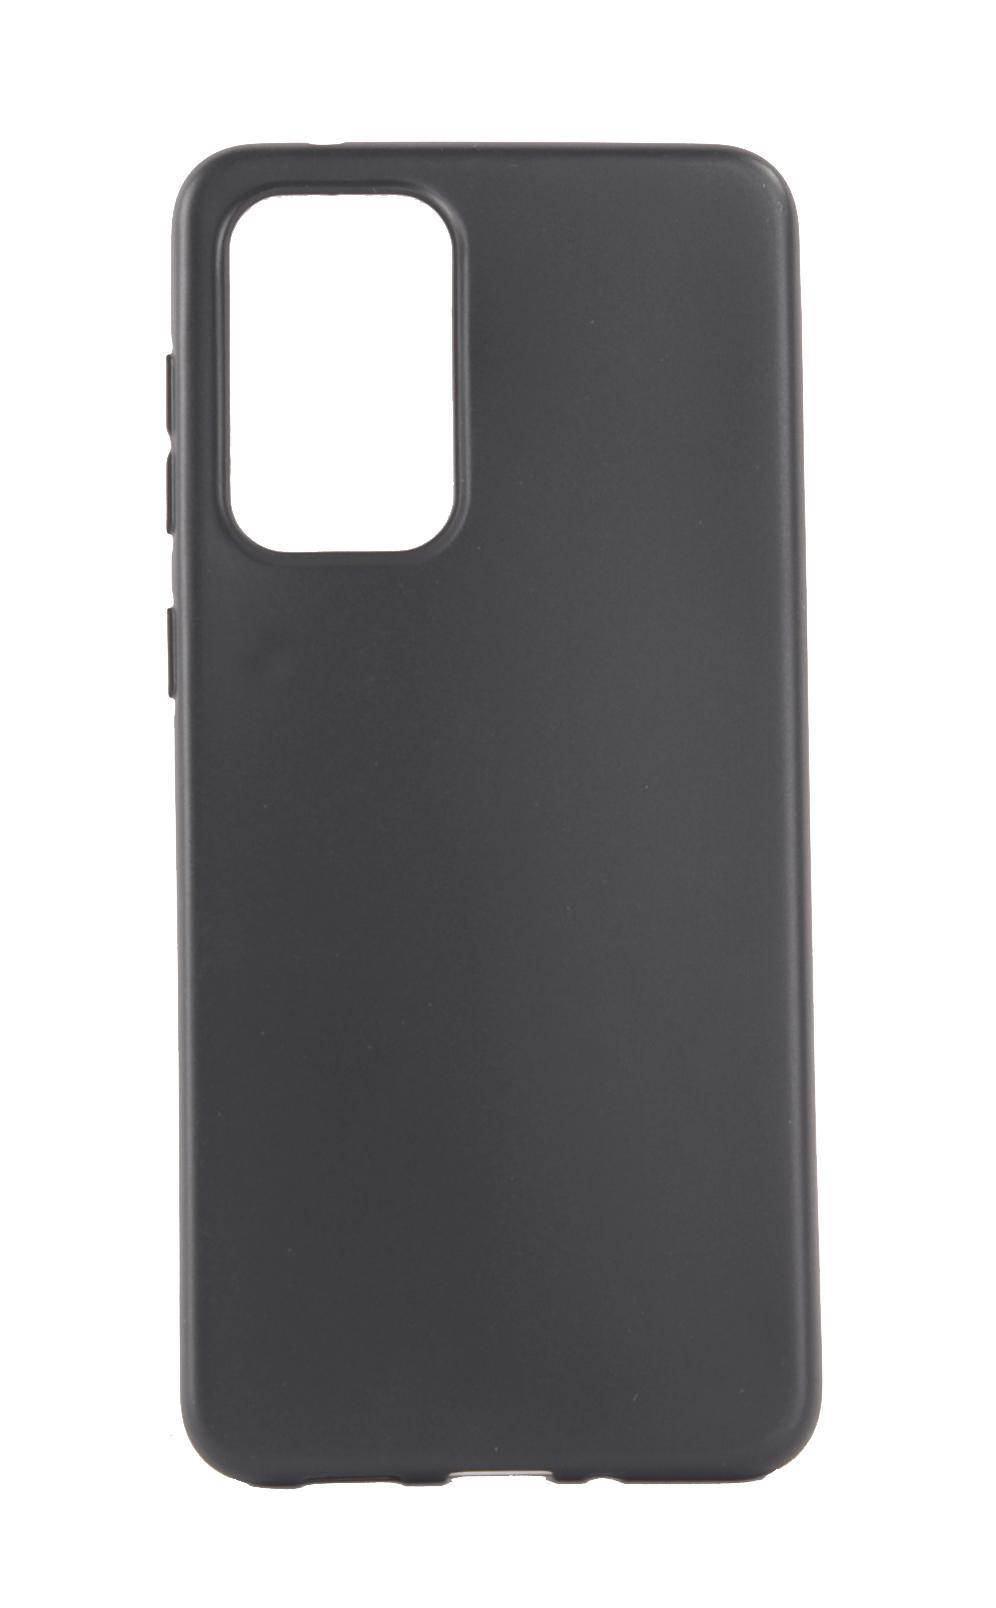 ISY ISC-5107, 5G, A33 Samsung, Schwarz Galaxy Backcover